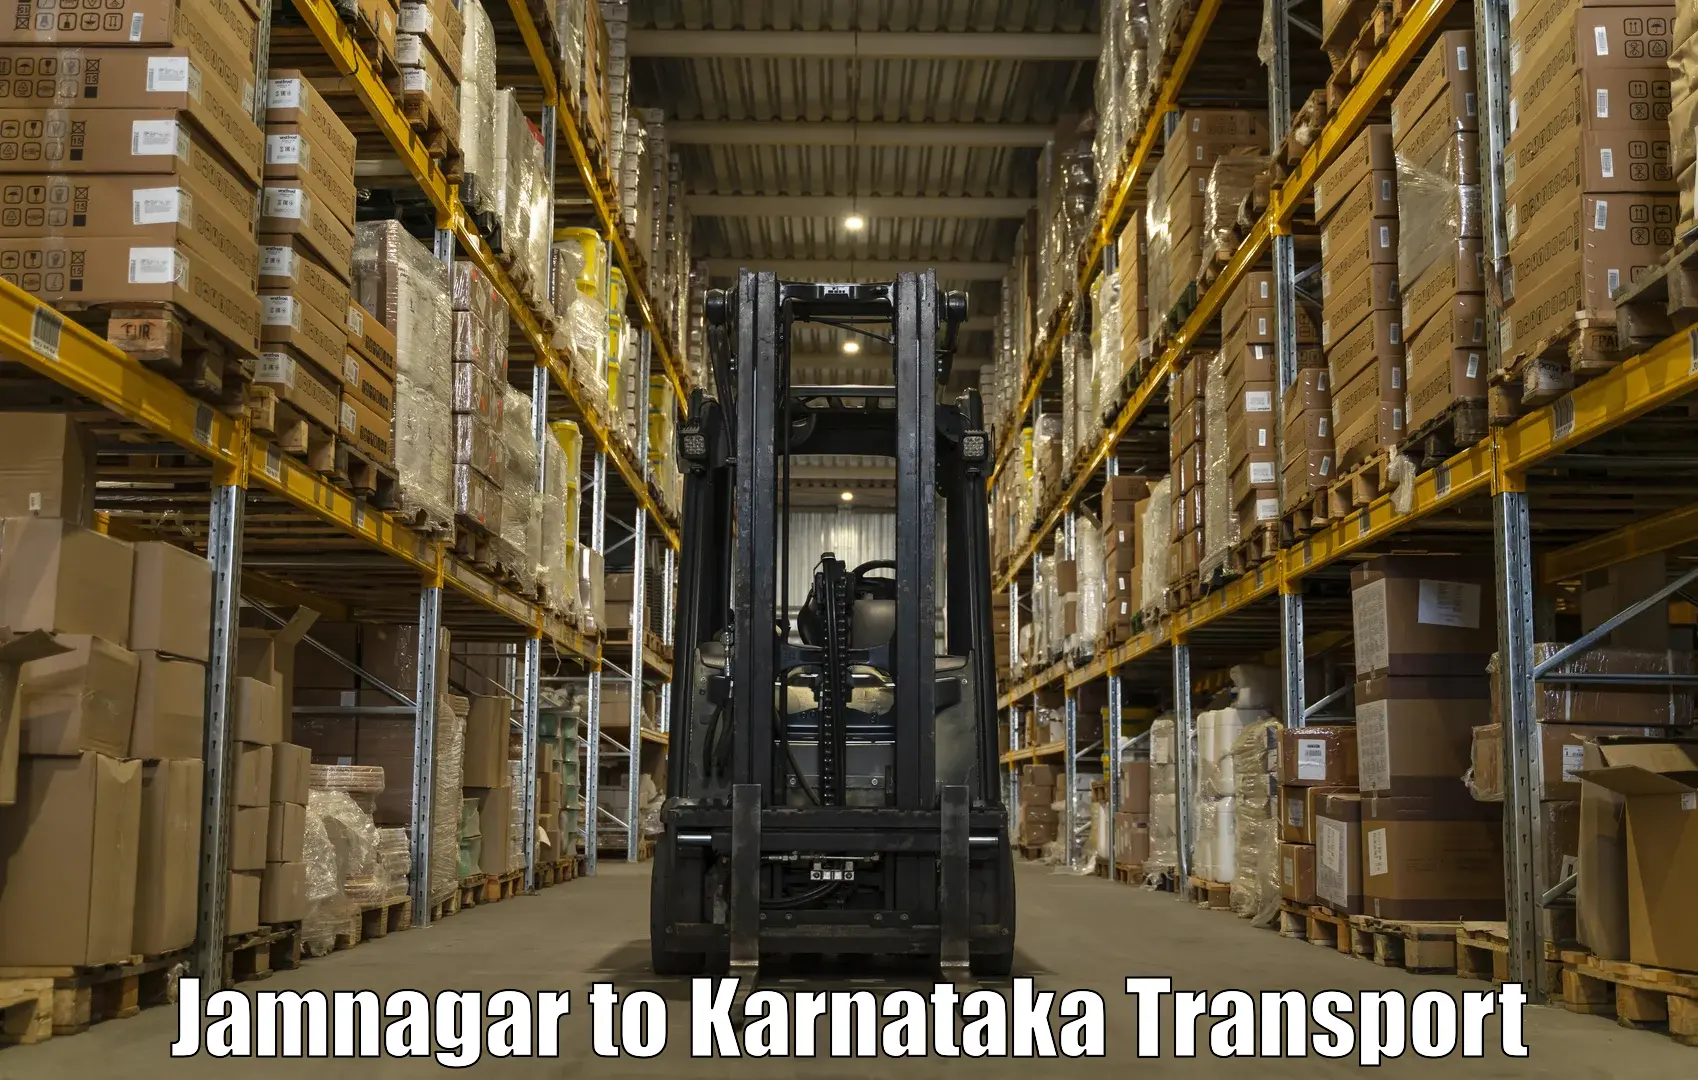 Air freight transport services Jamnagar to Mandya